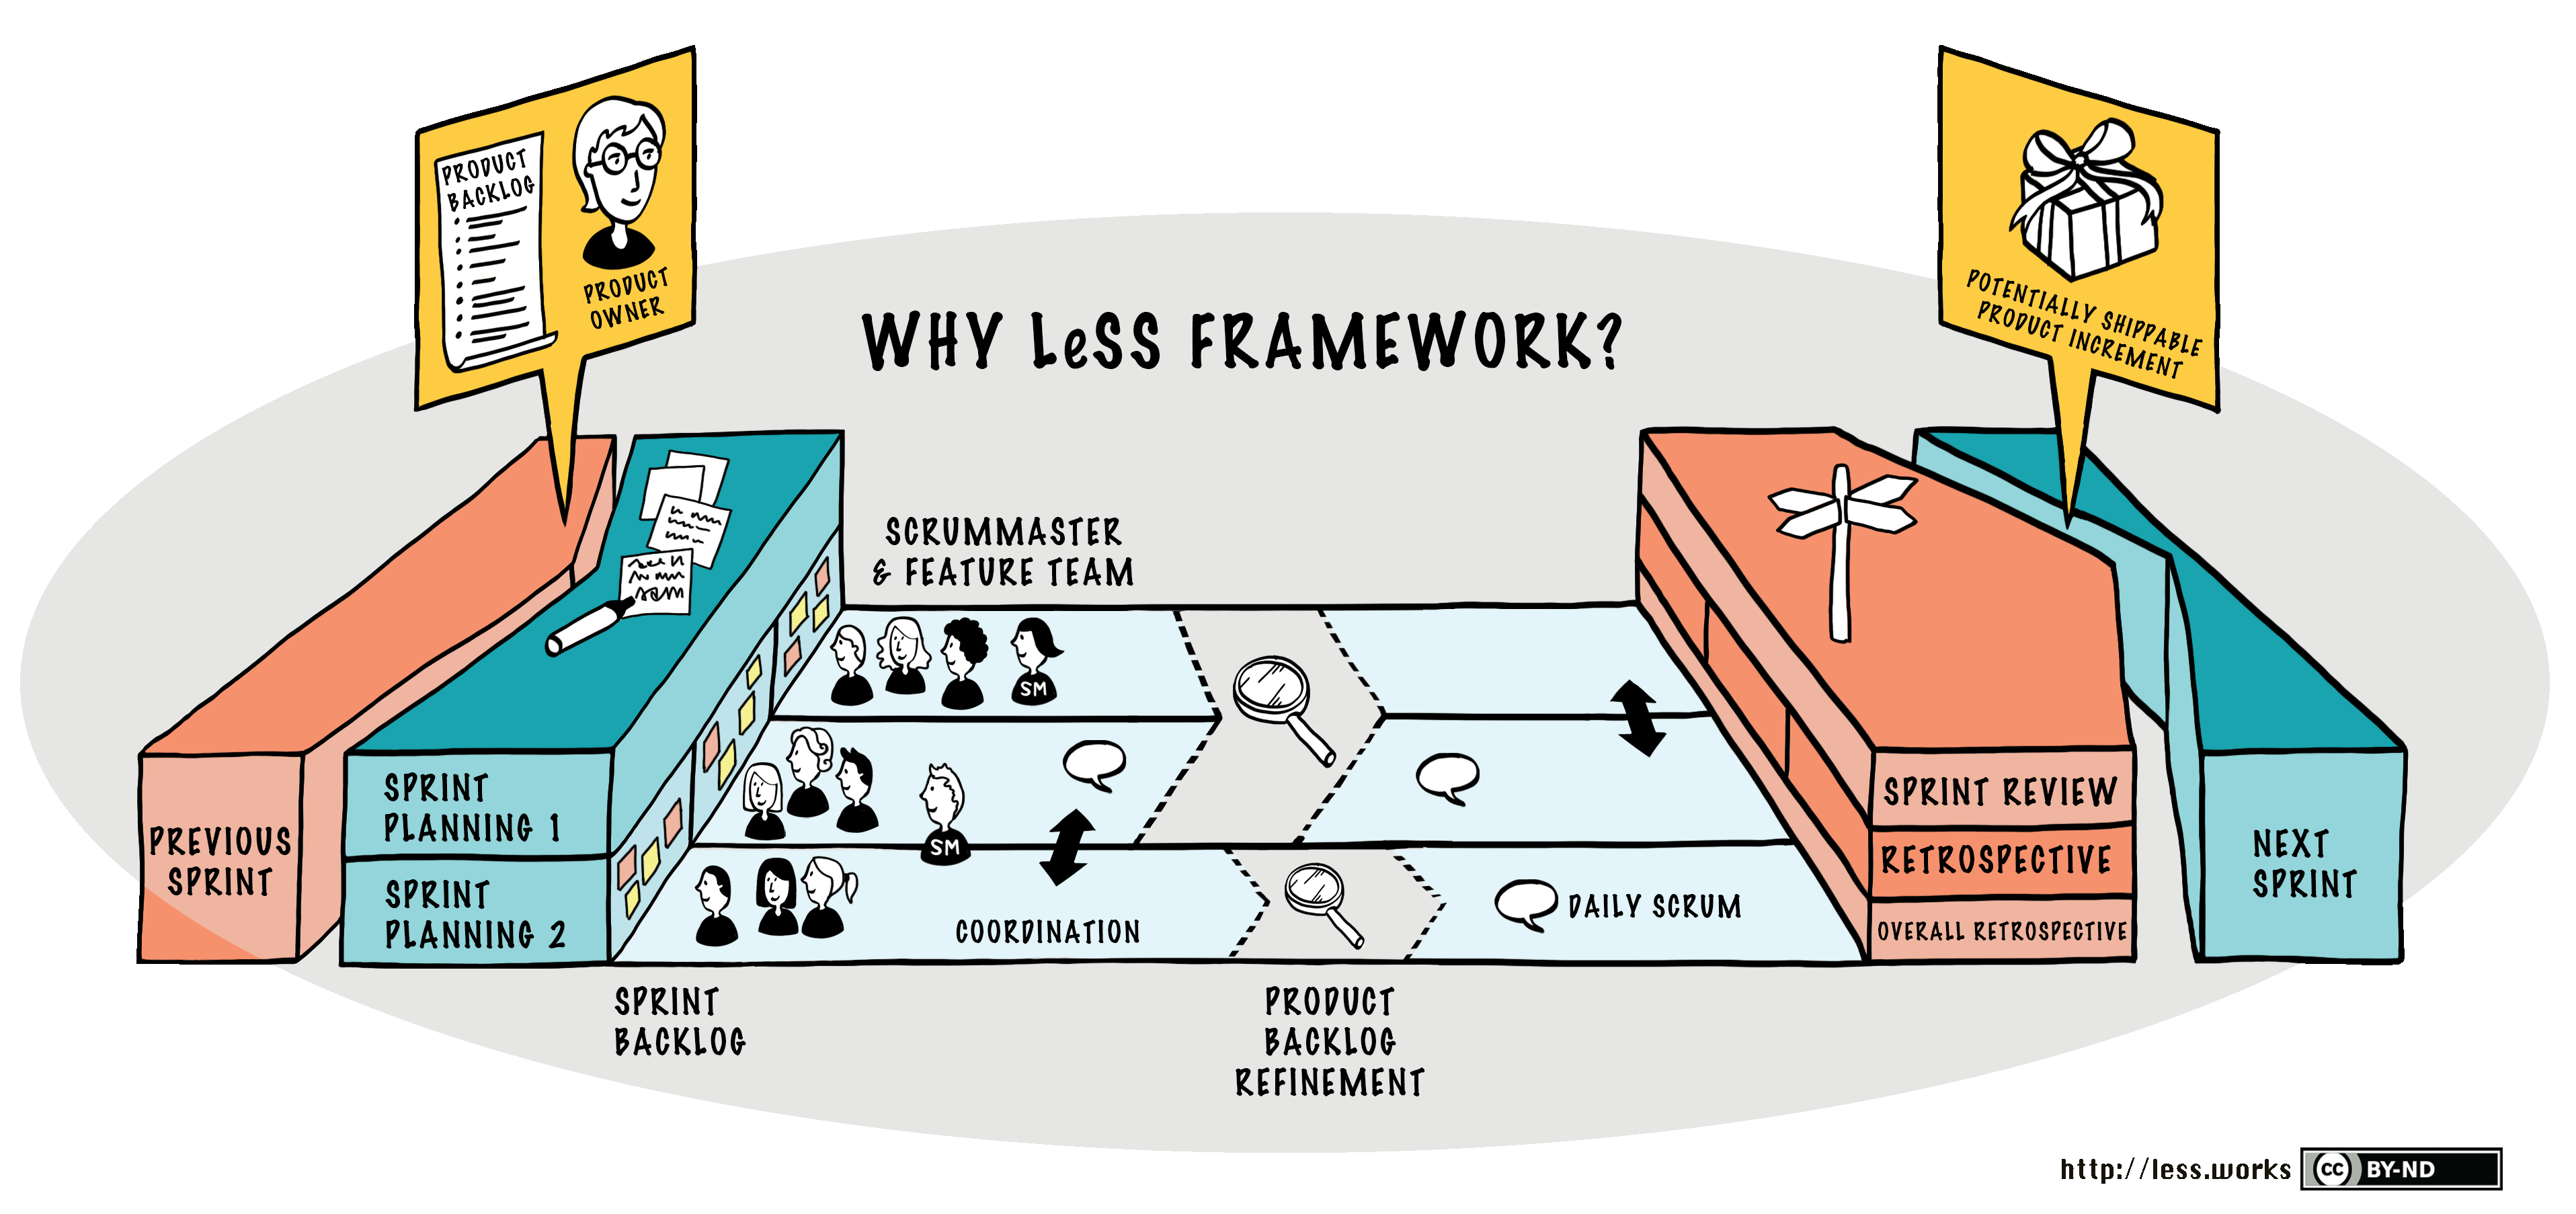 The LeSS Framework